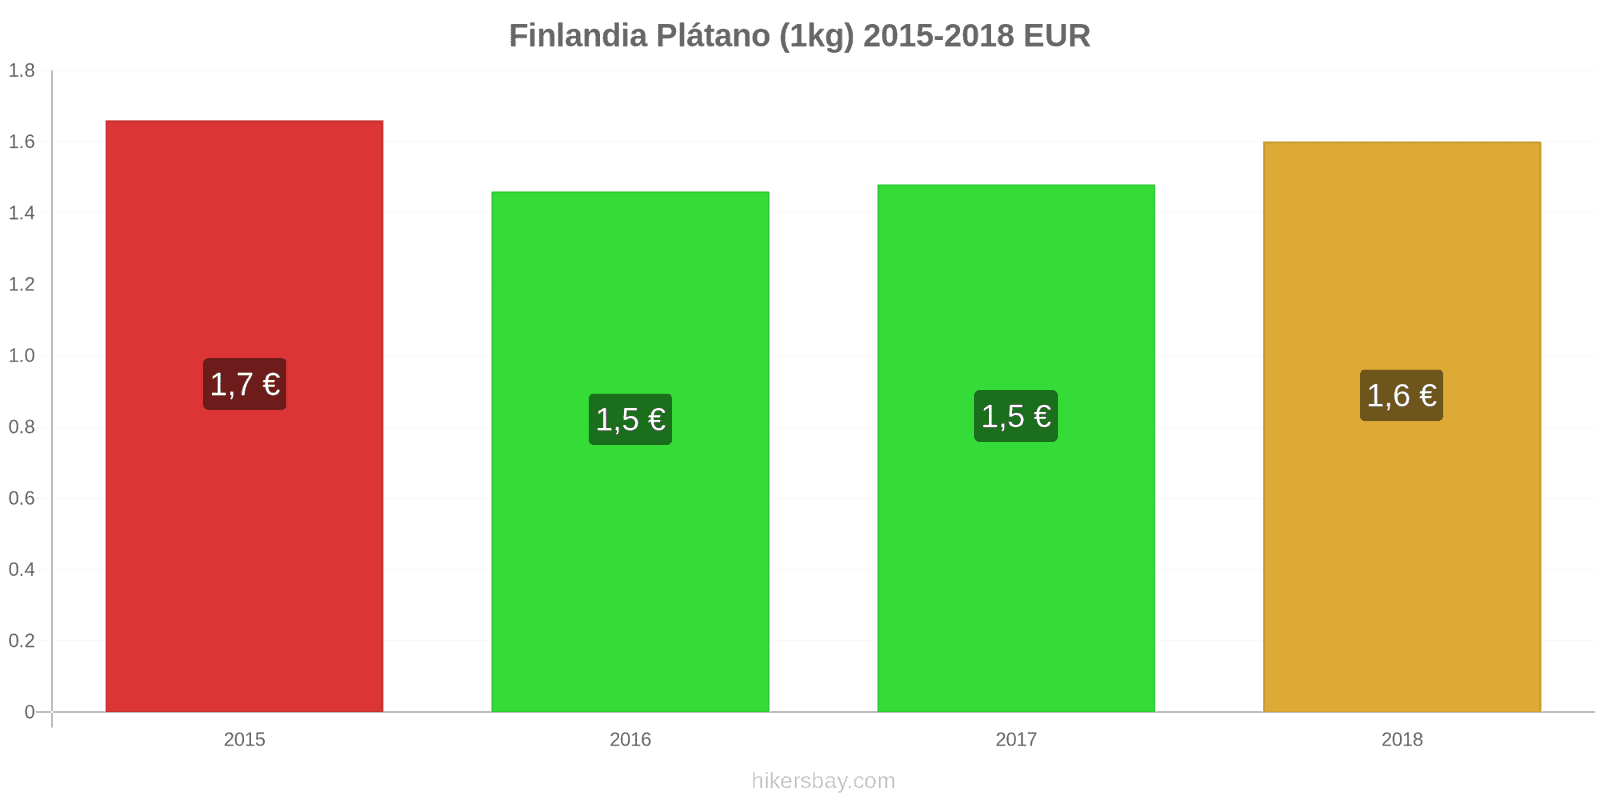 Finlandia cambios de precios Plátanos (1kg) hikersbay.com